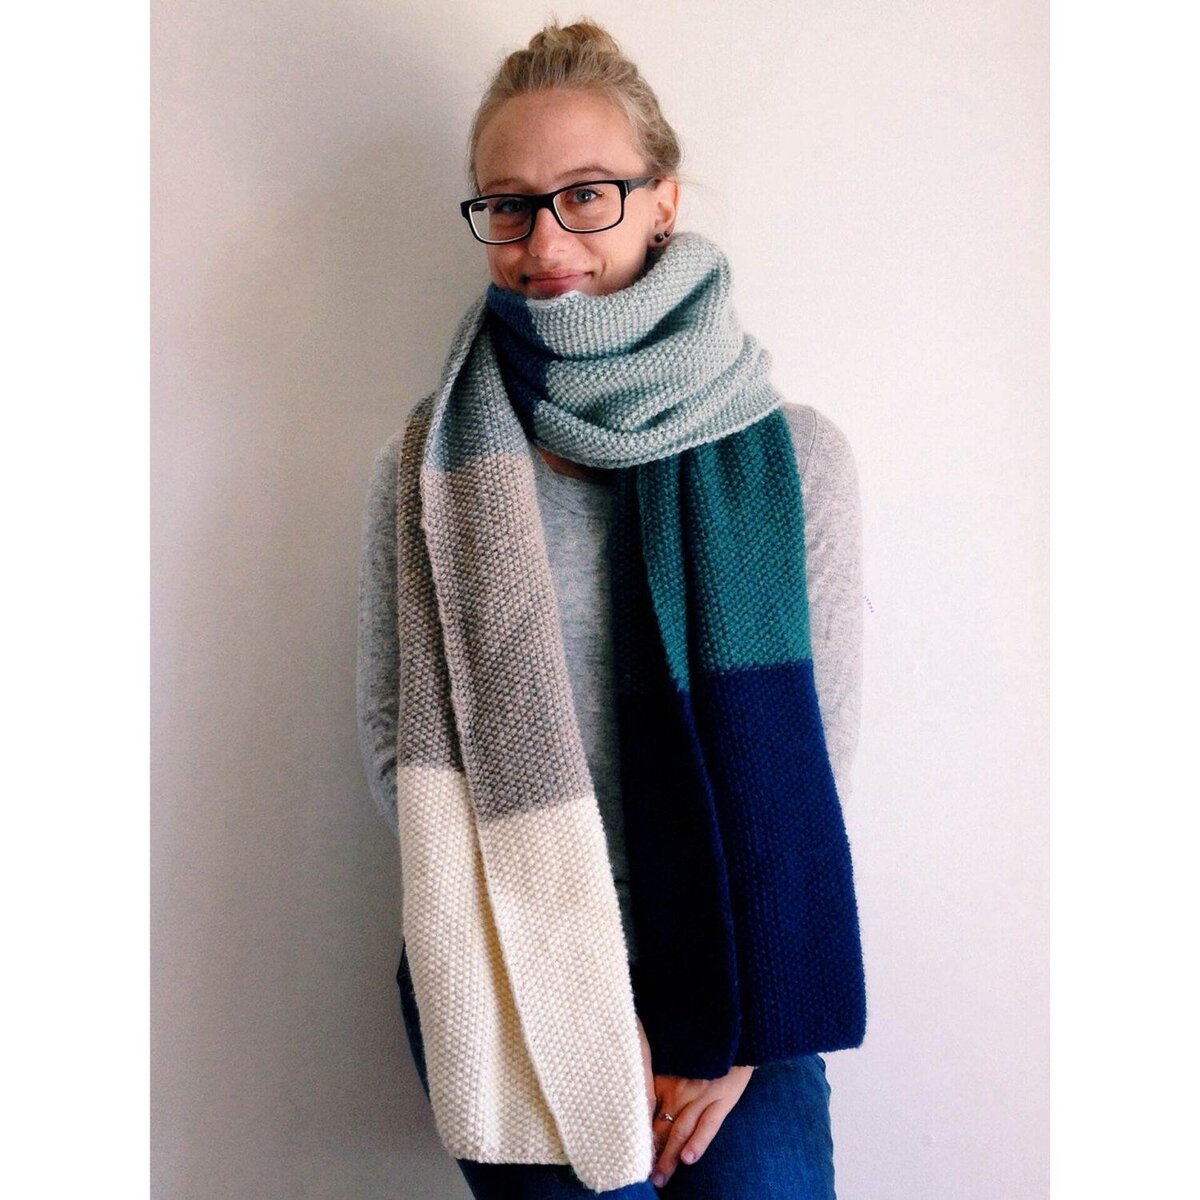 Самые модные шарфы на зиму /24 — их носят все женщины с безупречным вкусом | MARIECLAIRE